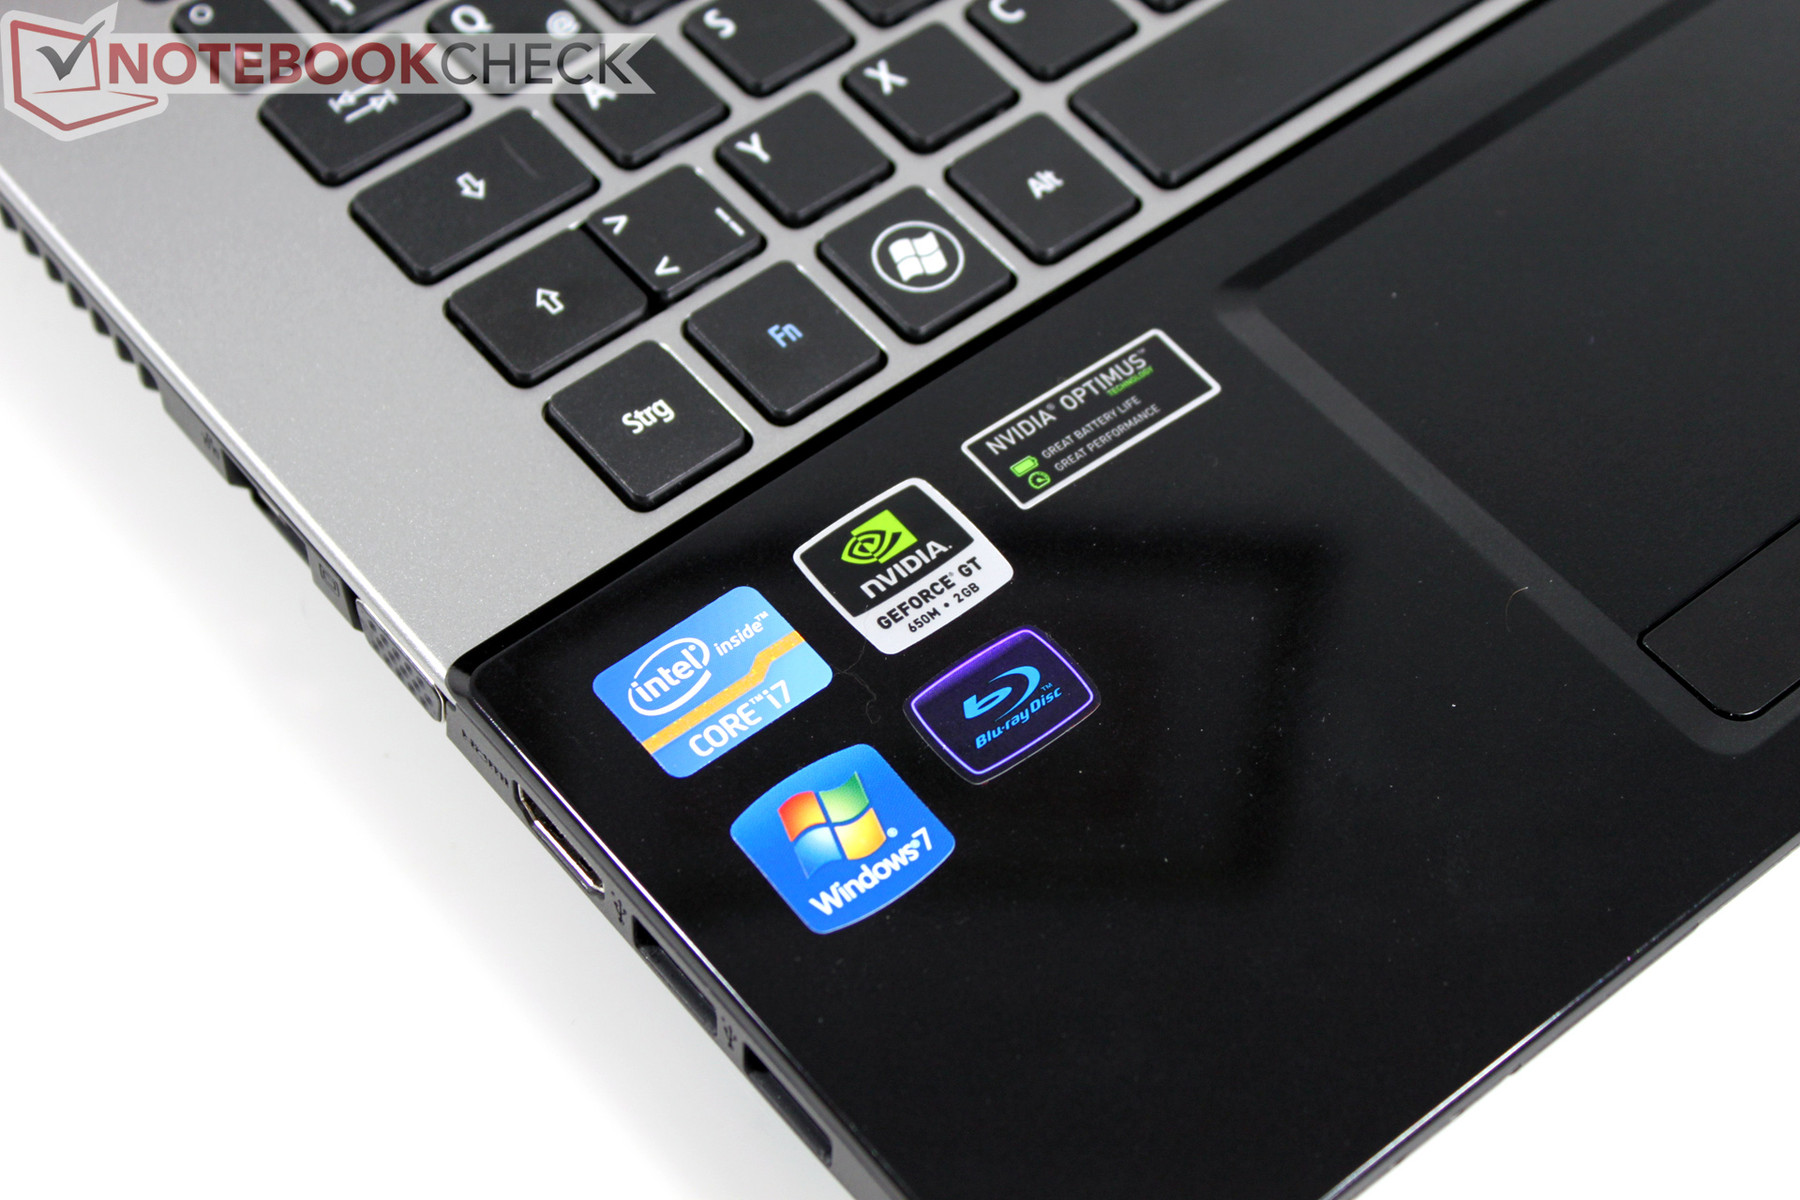 Review Acer Aspire V3-771G Notebook - NotebookCheck.net Reviews